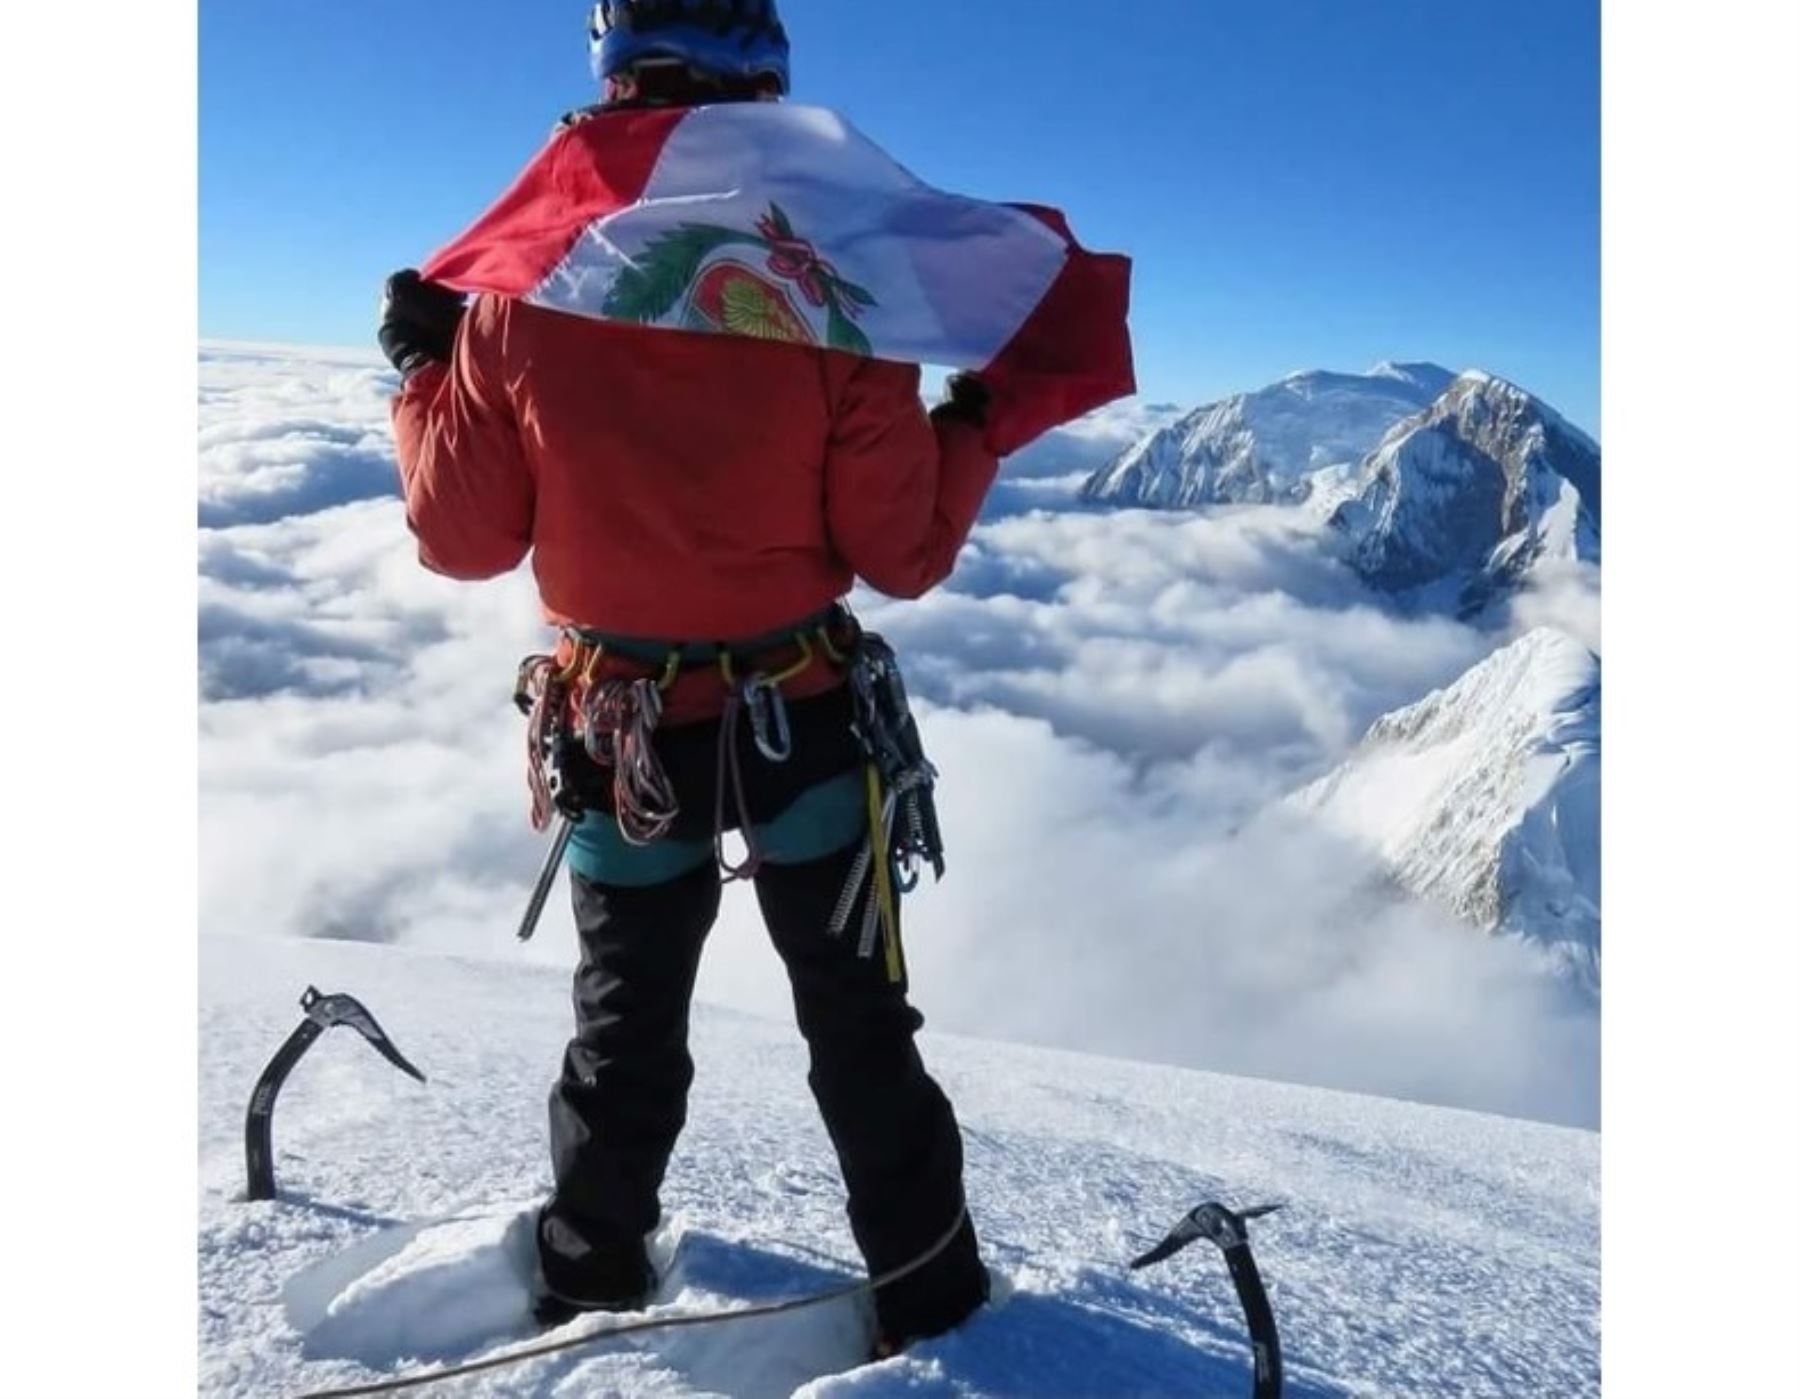 Andinista peruano Víctor Rímac conquista la cuarta montaña más alta del mundo, el nevado Lhotse, que forma parte de la cadena Himalaya. Foto: cortesía Víctor Rímac/Facebook.